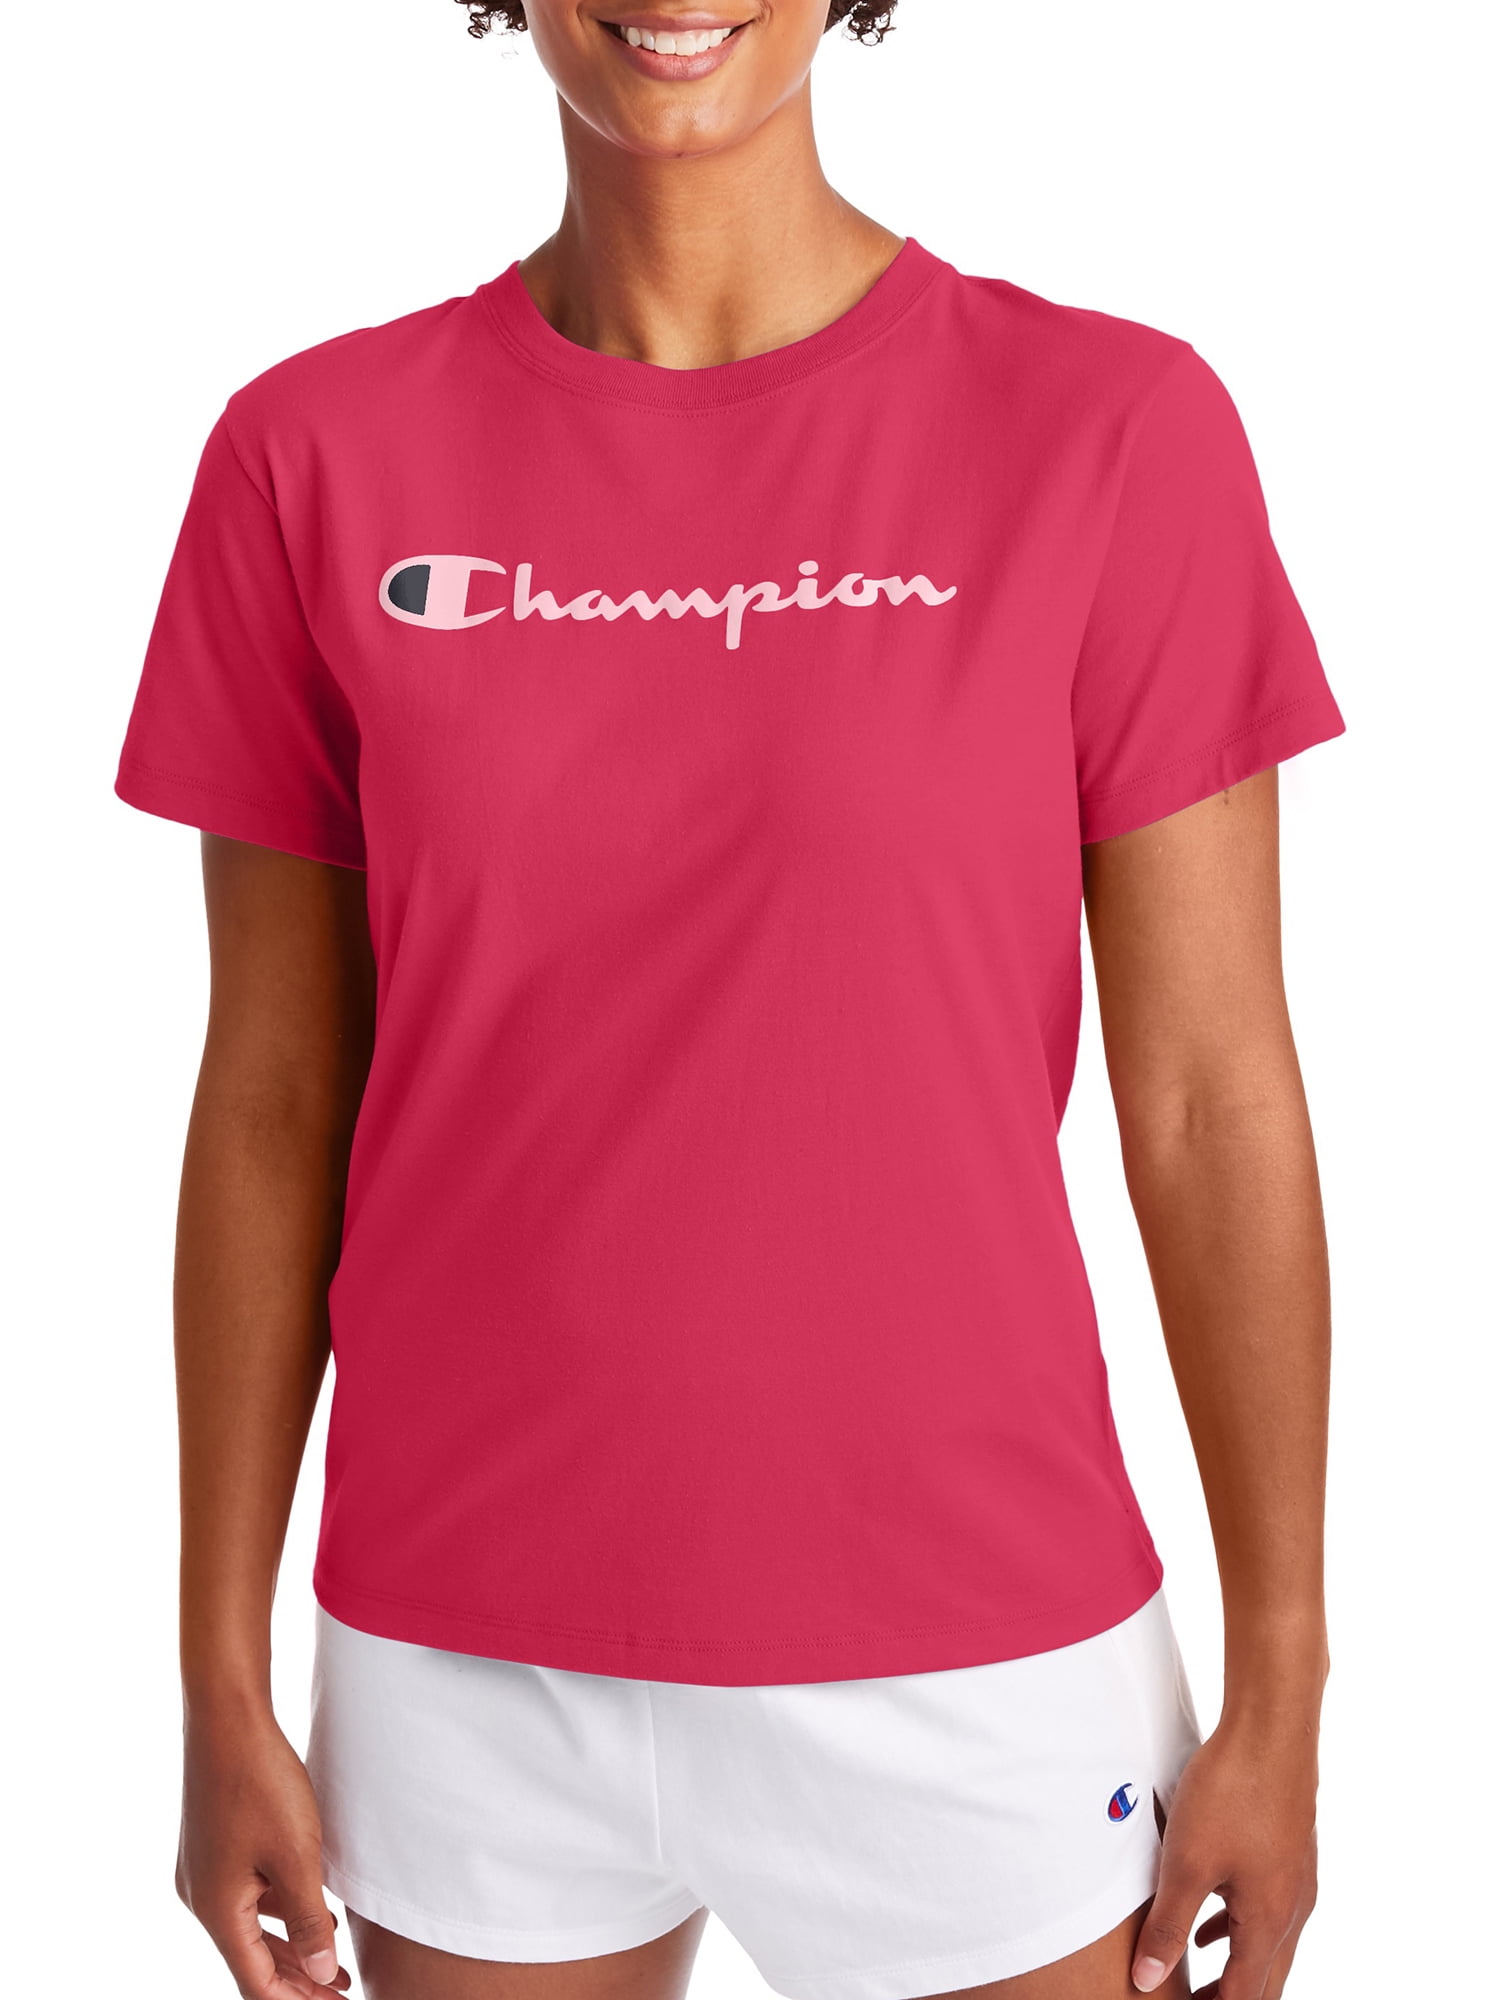 red champion shirt womens